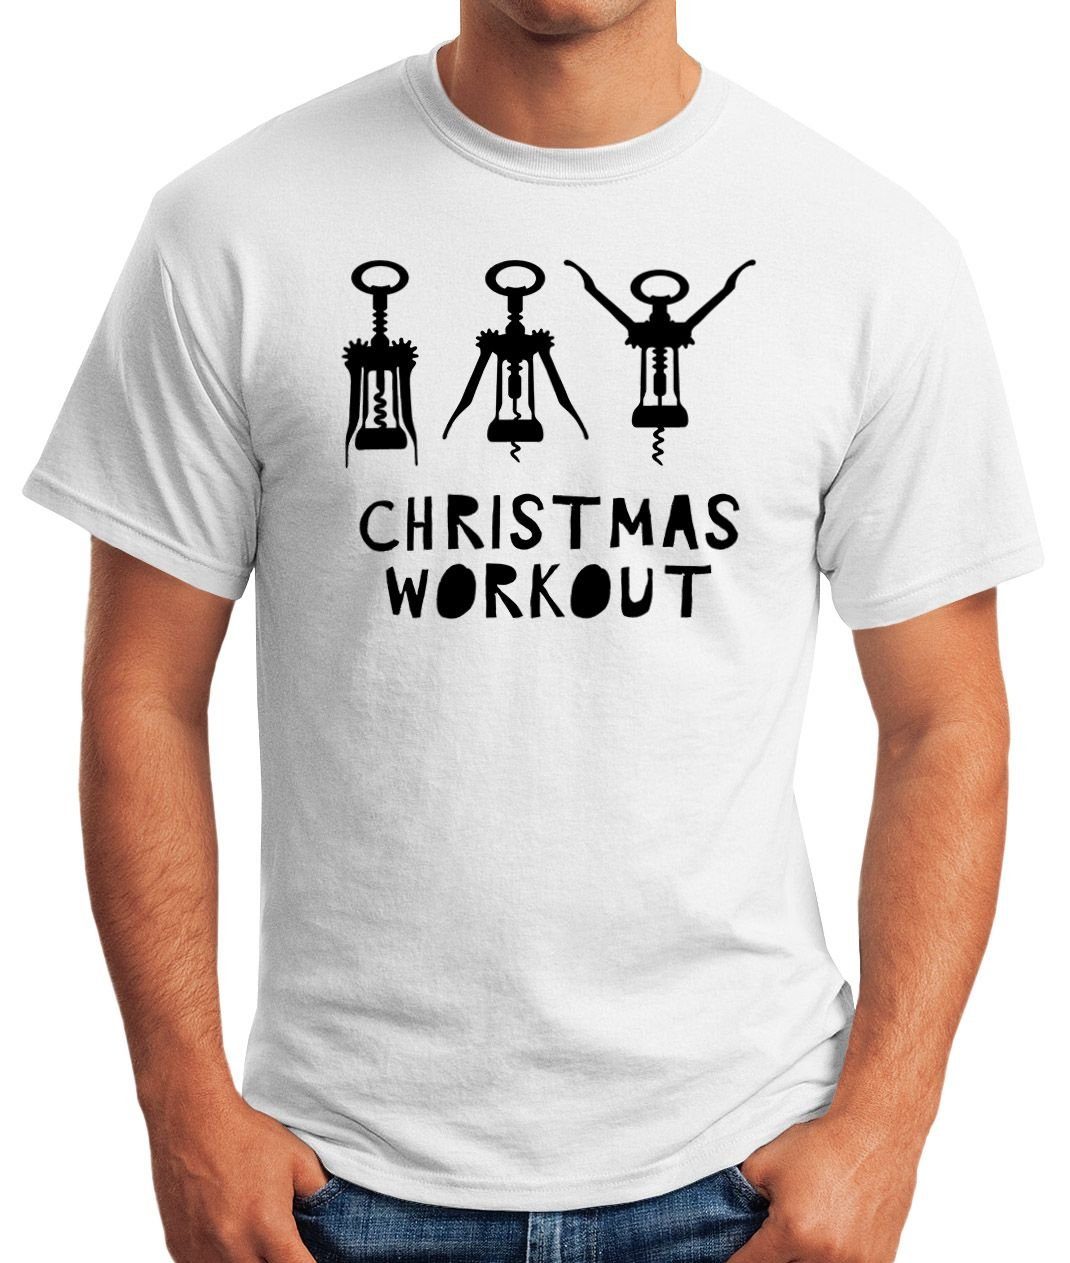 Herren Flaschenöffner Wein Weihnachten mit T-Shirt Fun-Shirt weiß Christmas trinken Korkenzieher Moonworks® Print MoonWorks lustig Print-Shirt Workout